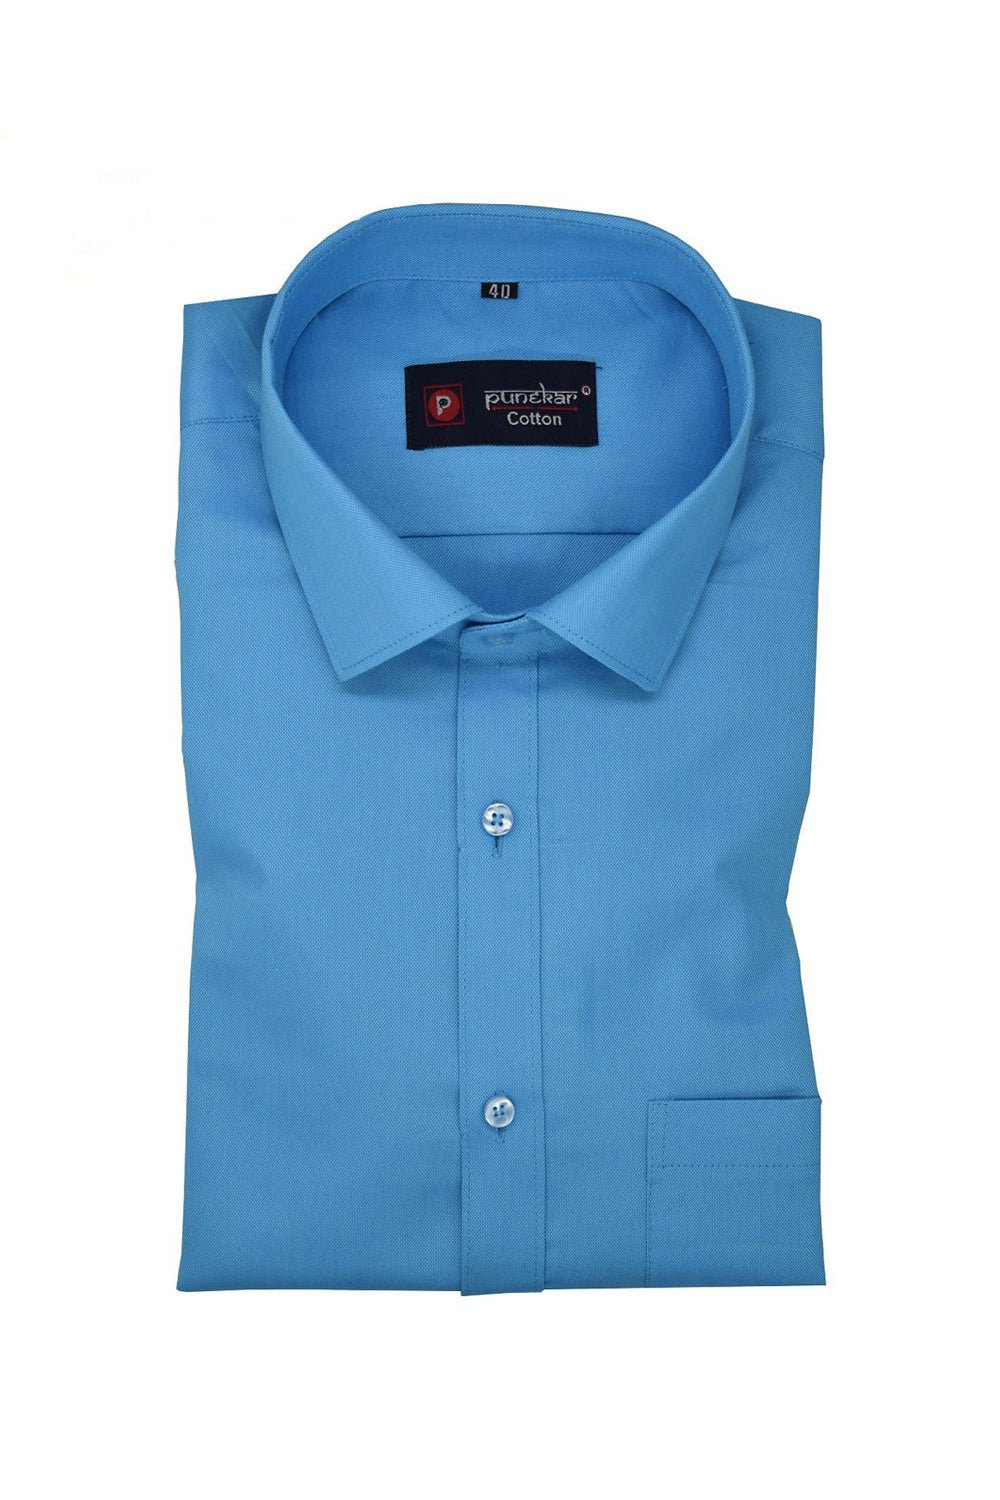 Punekar Cotton Blue Color Rich Cotton Formal Shirt For Men&